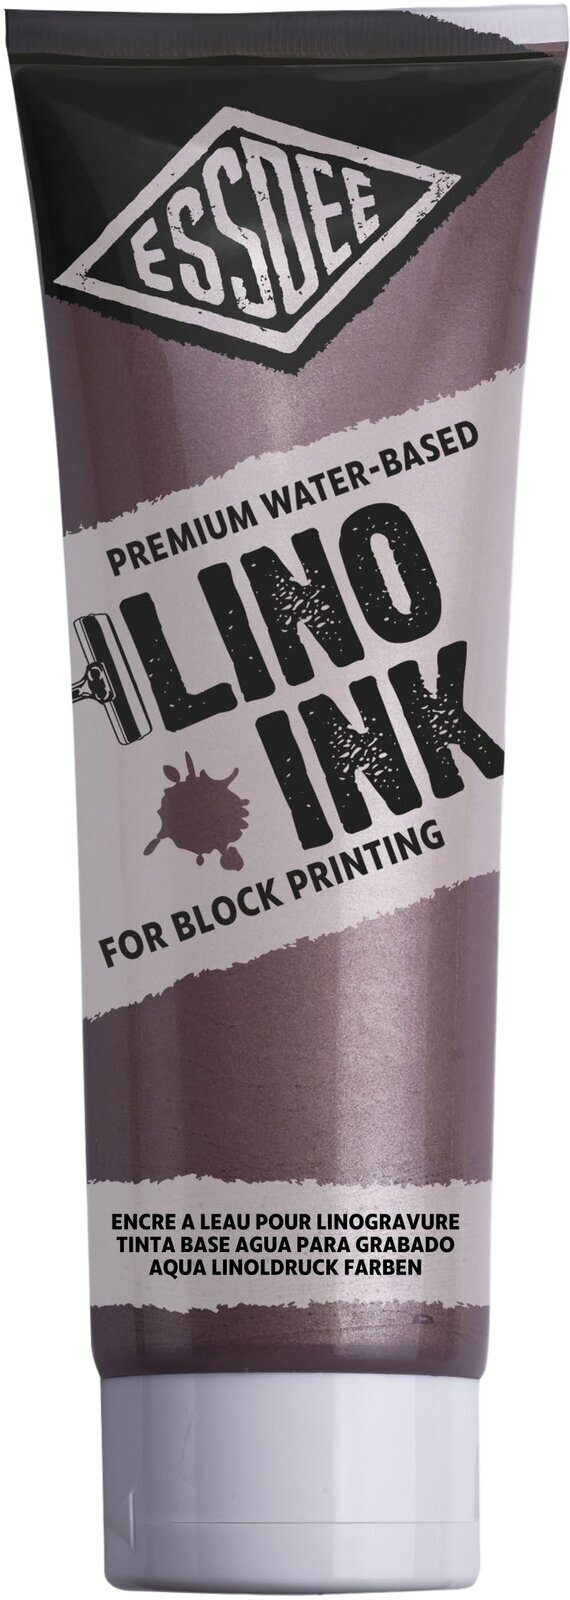 Боя за линогравюра Essdee Block Printing Ink Боя за линогравюра Metallic Bronze 300 ml